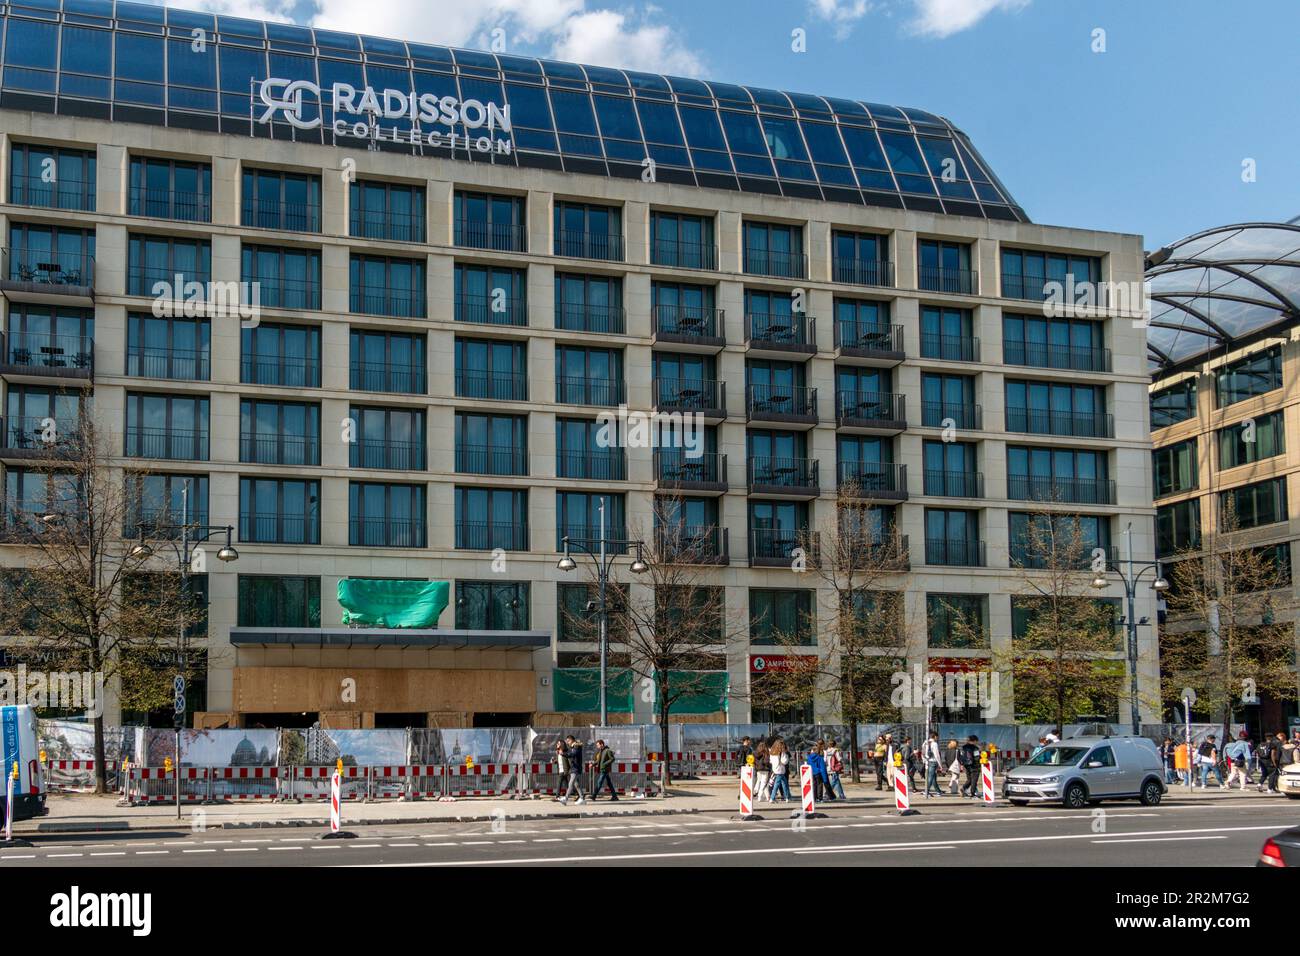 Aussenansicht des Radisson Cellection a Berlino-Mitte. Monate nachdem das riesiges Aquarium geplatzt war ist das Hotel nach immer eine Baustelle. Foto Stock